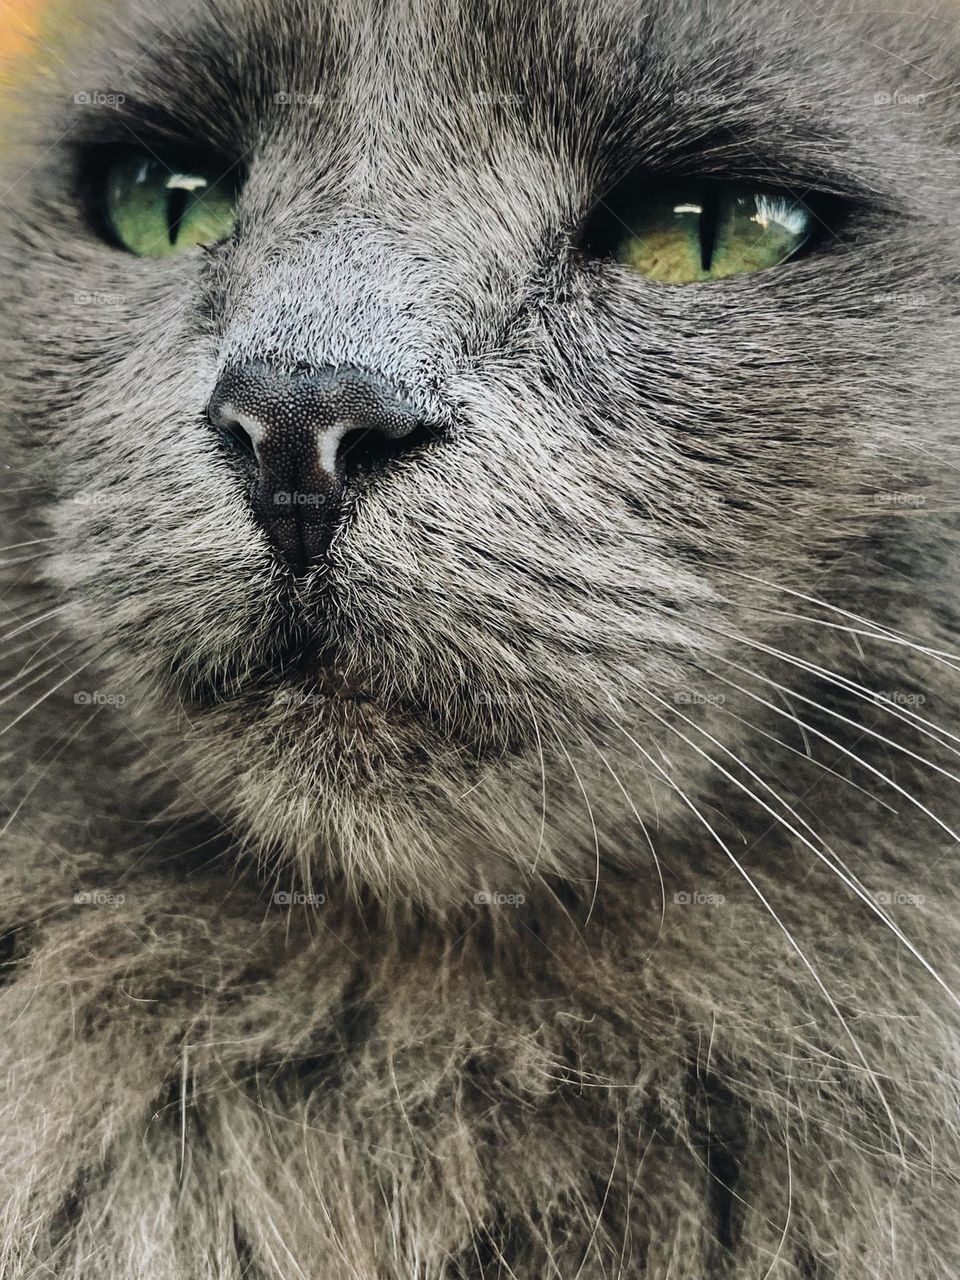 Cat up-close